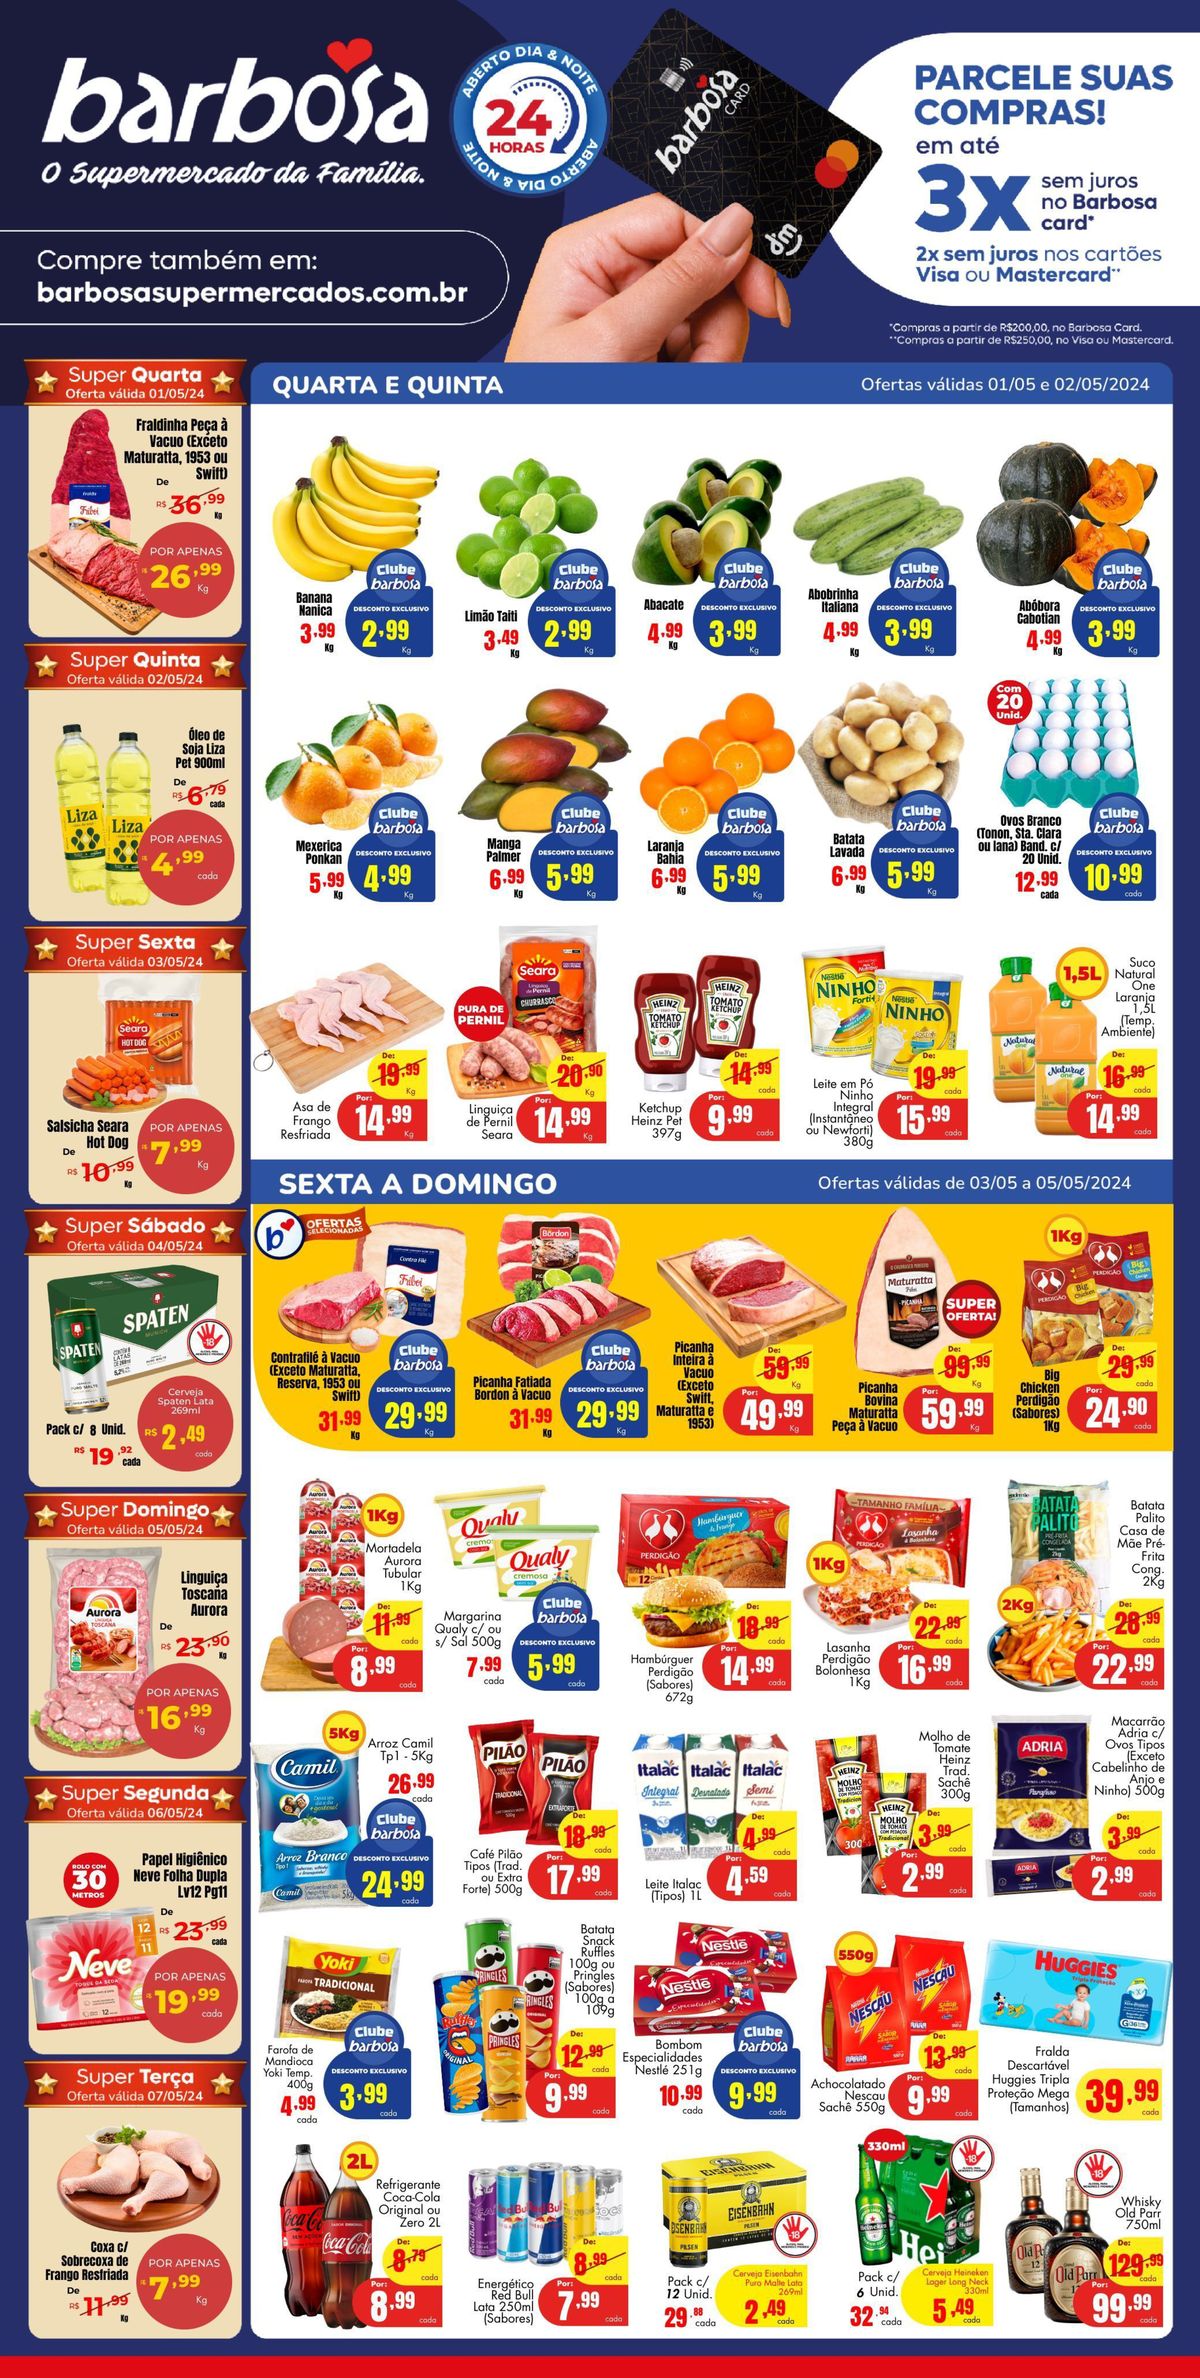 Ofertas e promoções em Supermercados, Rede e Interior, 07-05-2024, Barbosa Supermercados